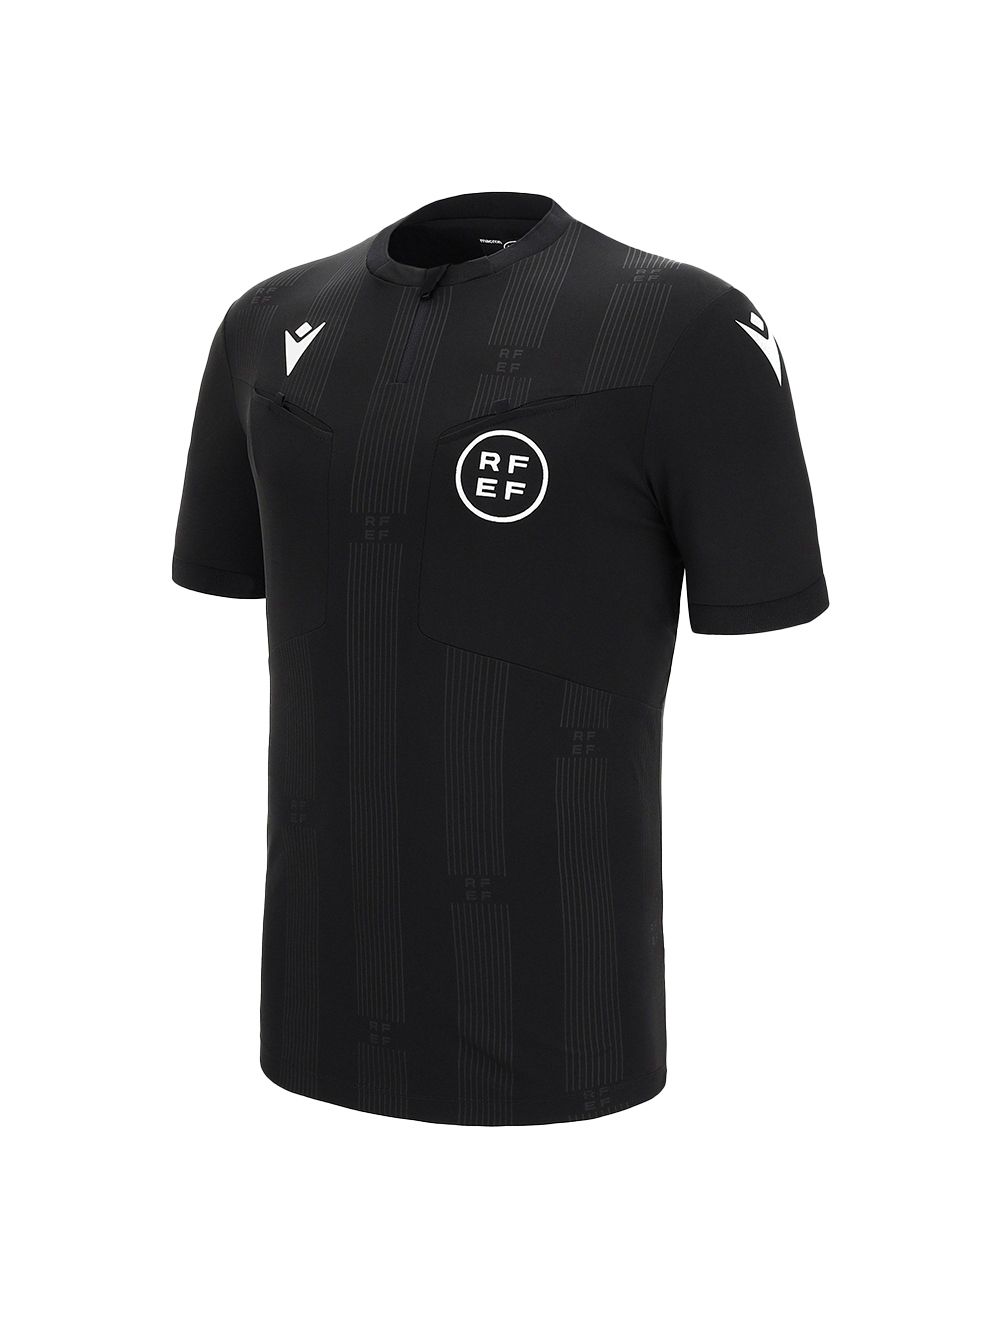 Arbitro su Camiseta en gris  Adidas camiseta gris Oficial Arbitro l Camiseta  arbitro de Futbol